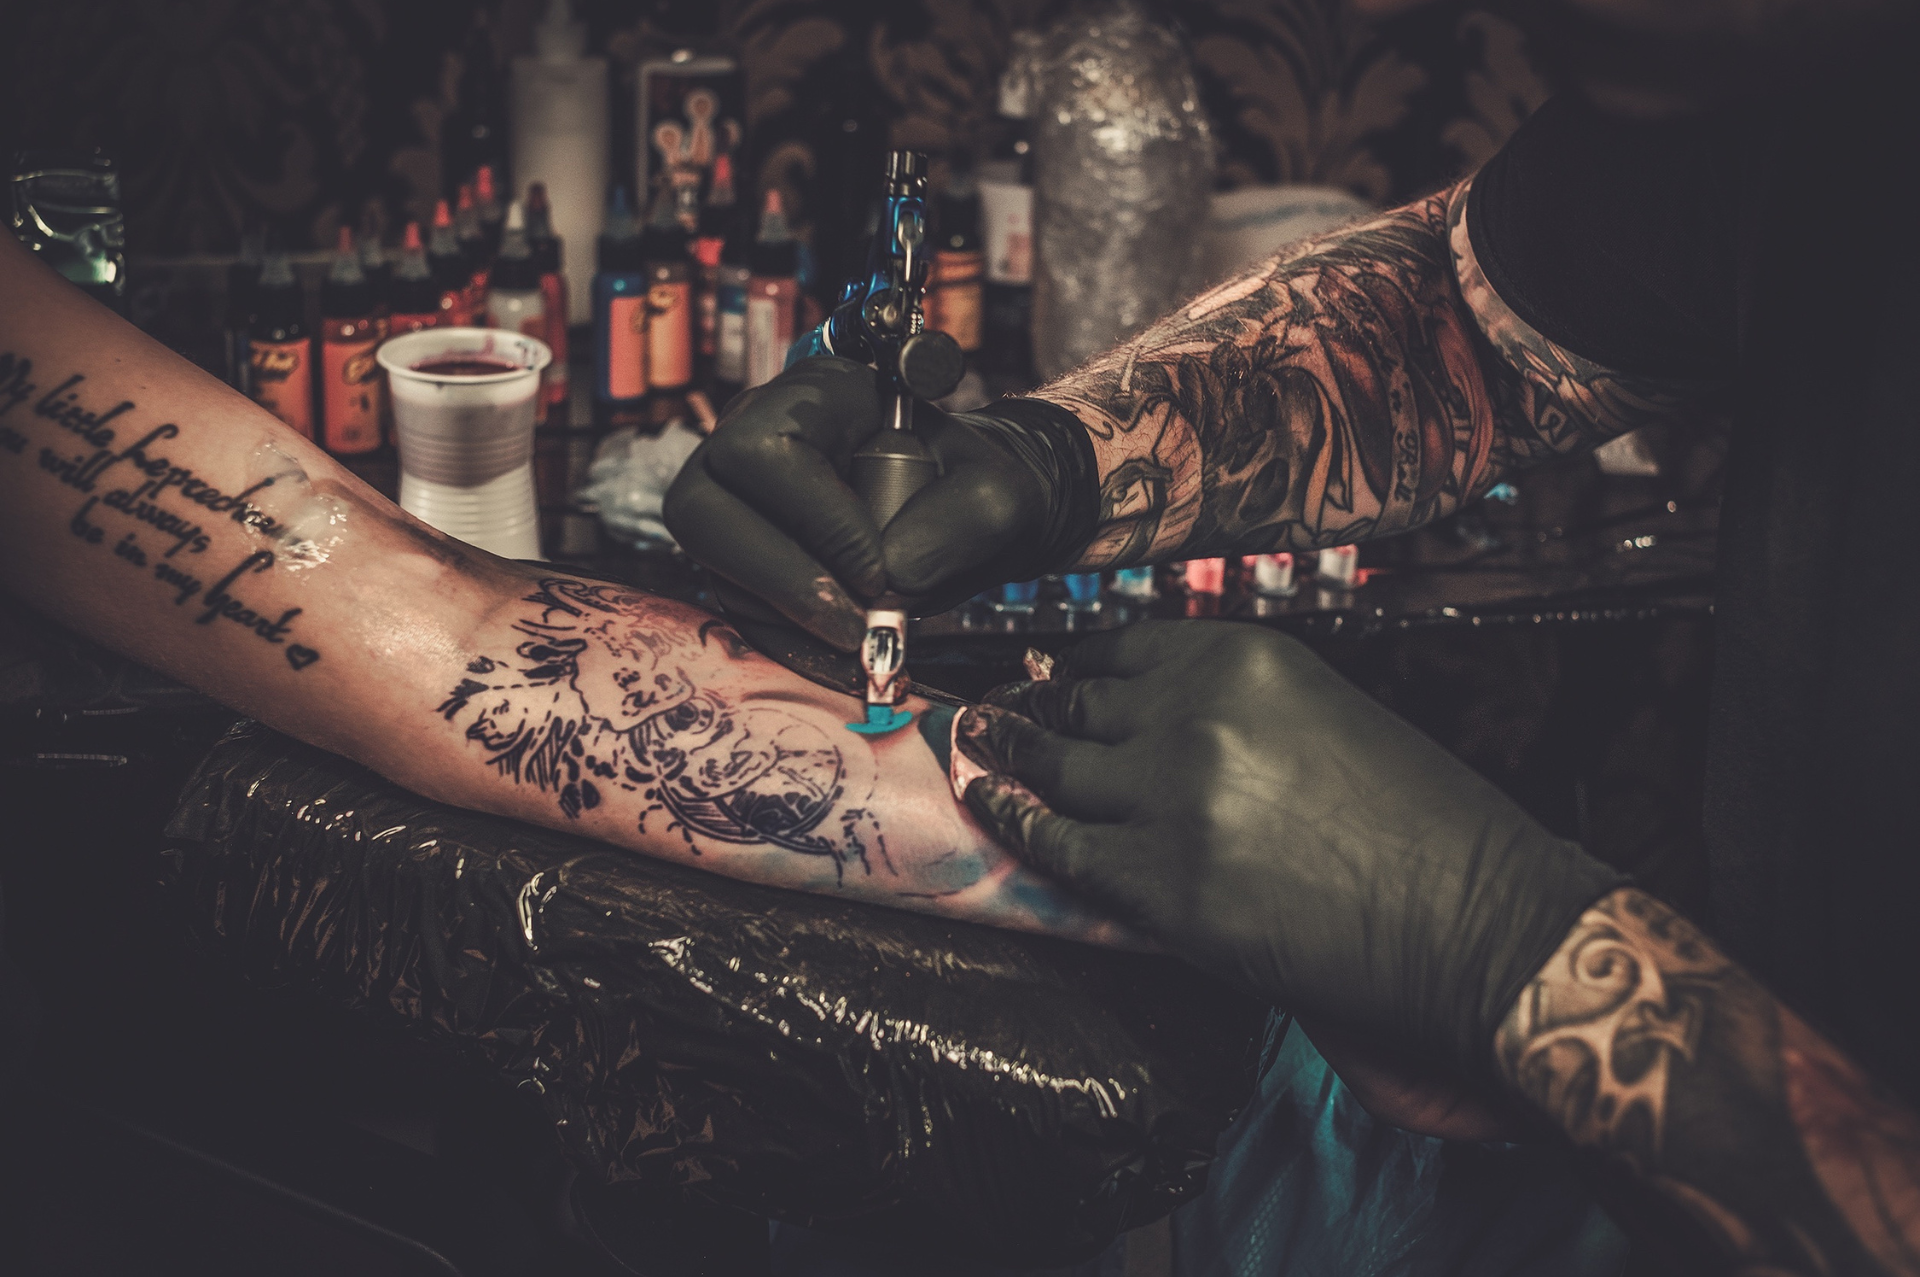 El Lado Oscuro de los Tatuajes: ¿Pueden las Tintas Causar Cáncer?